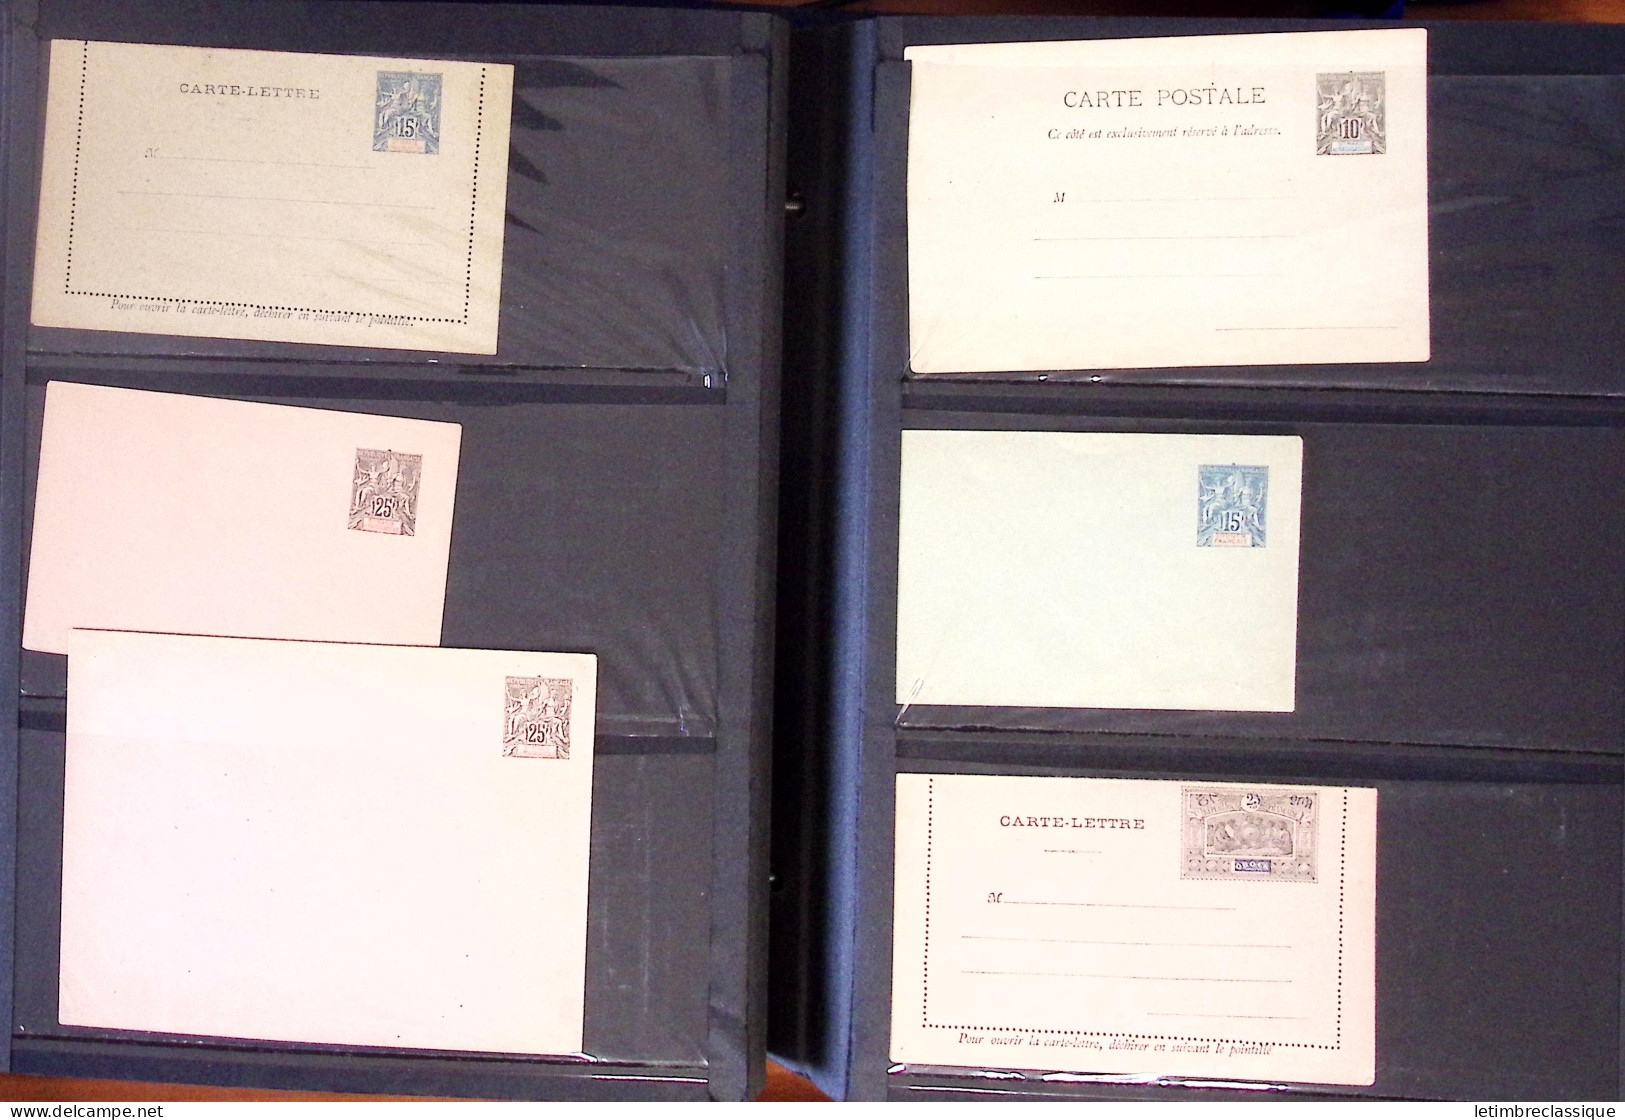 Lettre 1880-1977, Collection en un classeur de près d'une centaine d"entiers postaux, principalement neufs, en majorité 